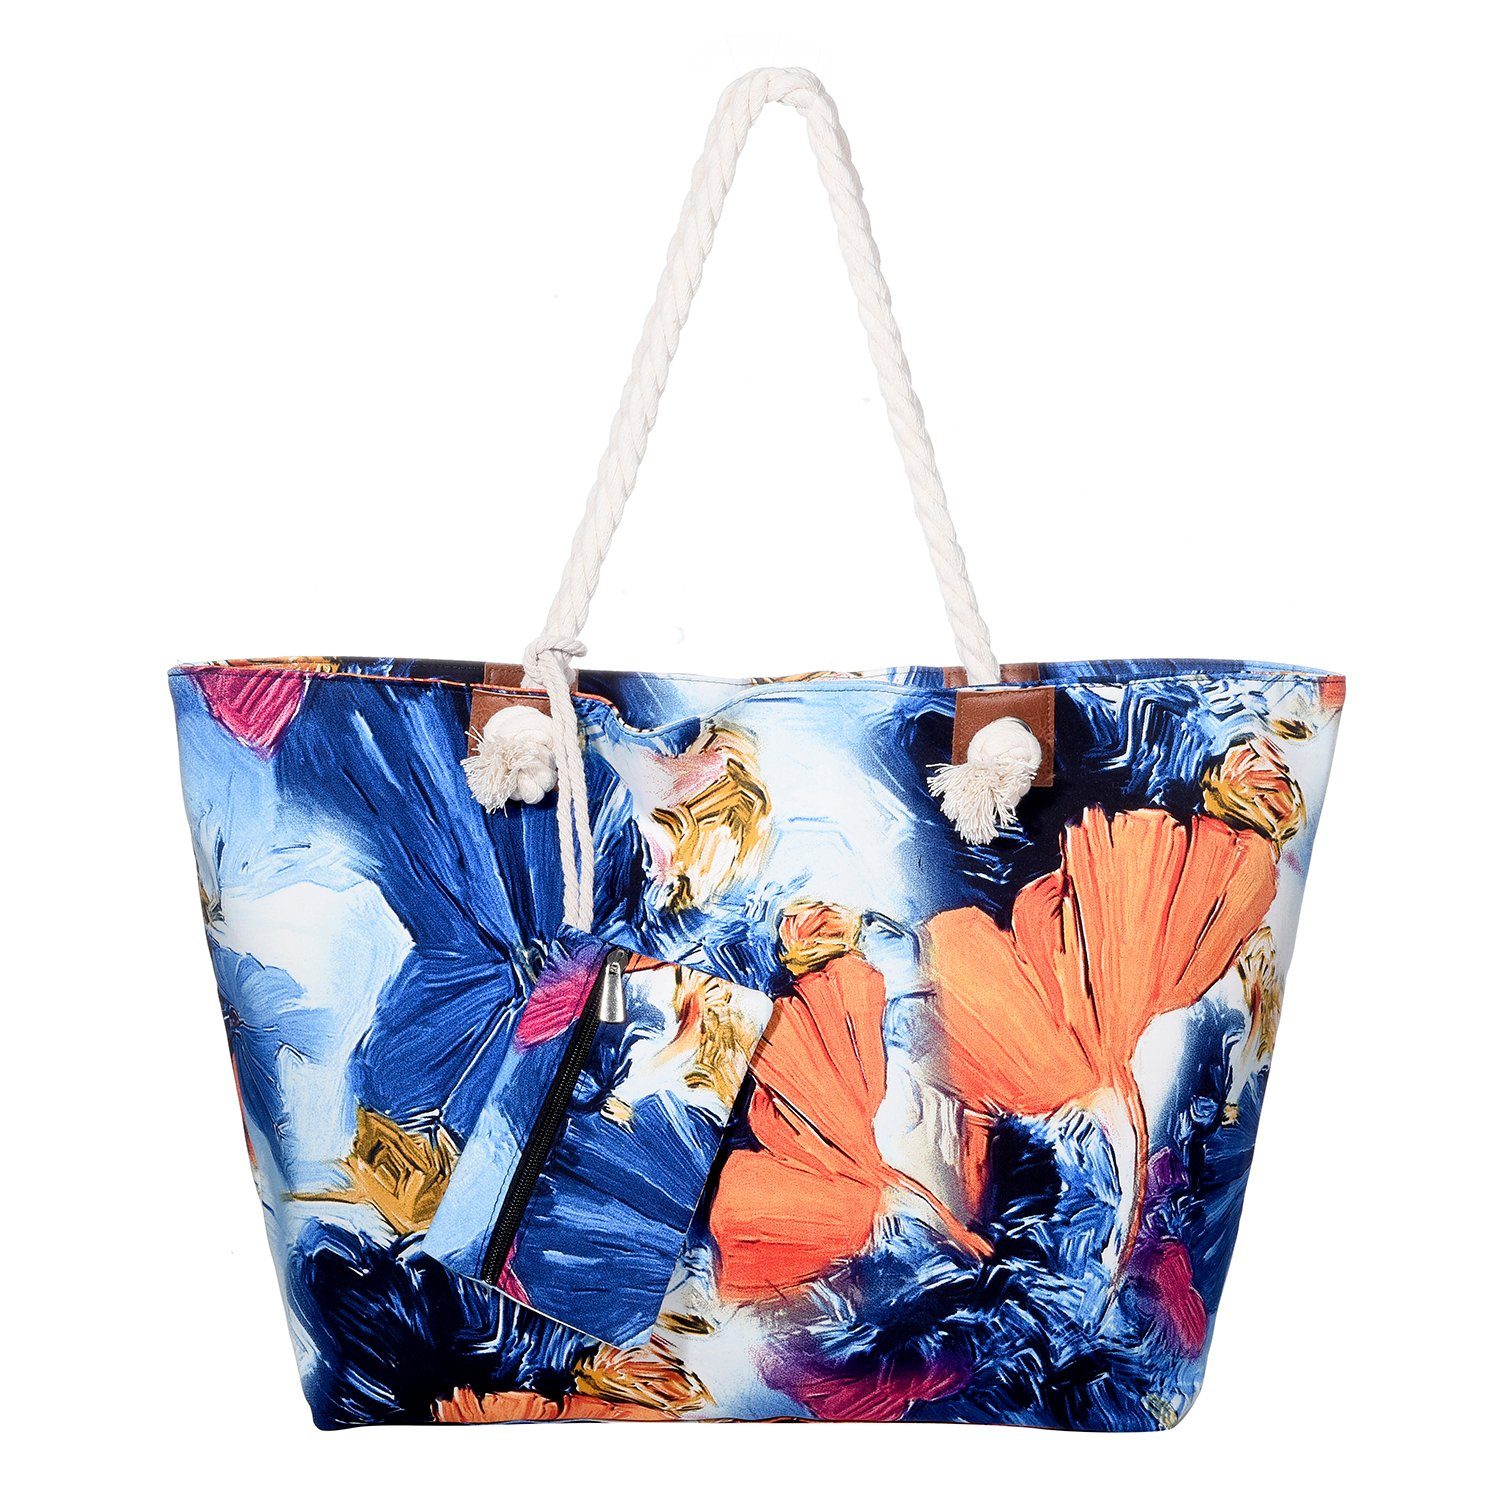 inkl. DonDon (2-tlg), Große Strandtasche Shopper mit Beutel wasserabweisende Strandtasche, Reißverschluss, kleinem aquarelle world Tasche